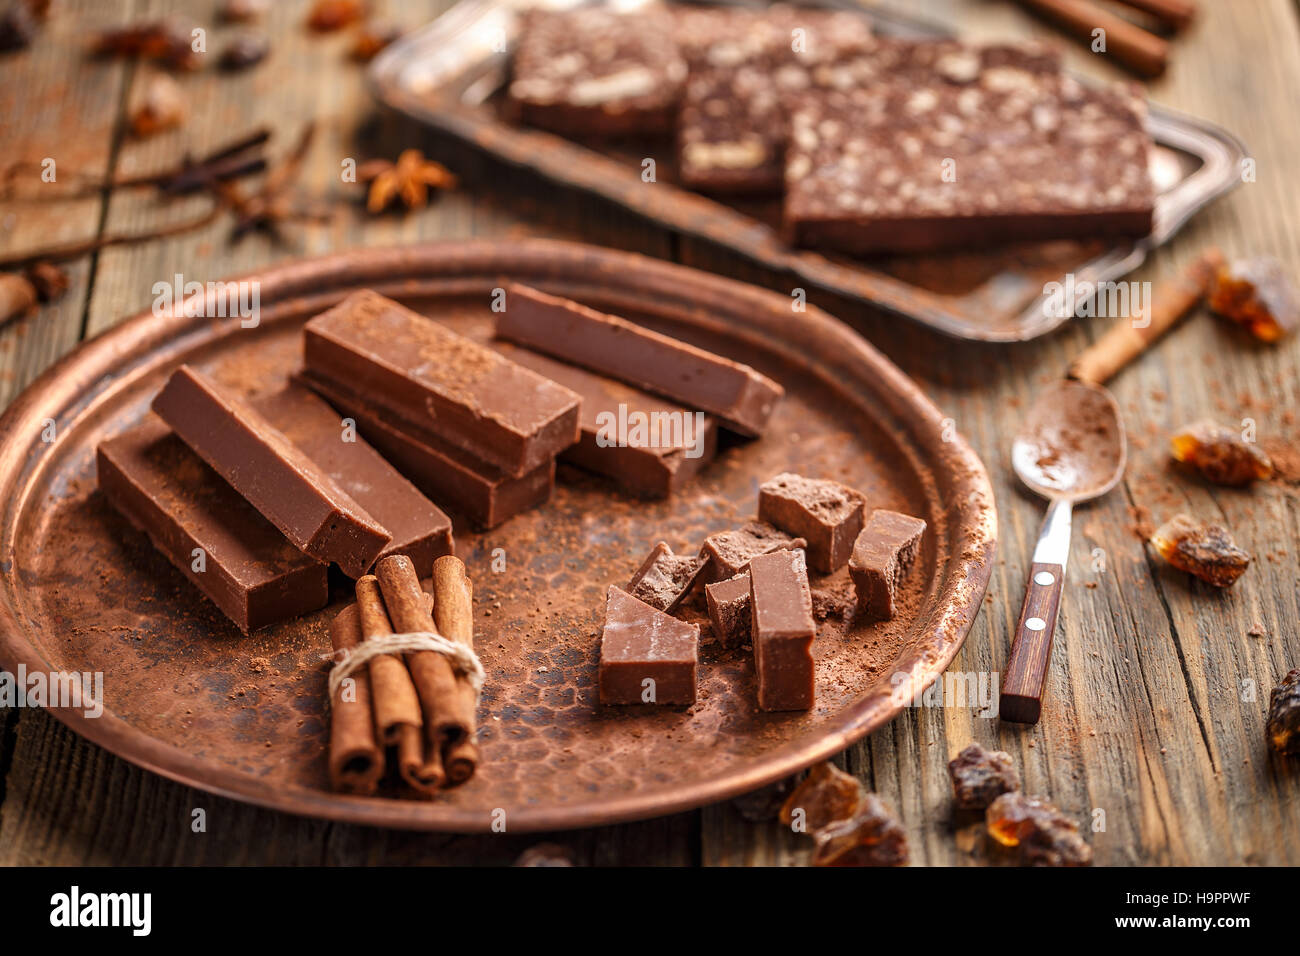 Homemade chocolate bars Stock Photo